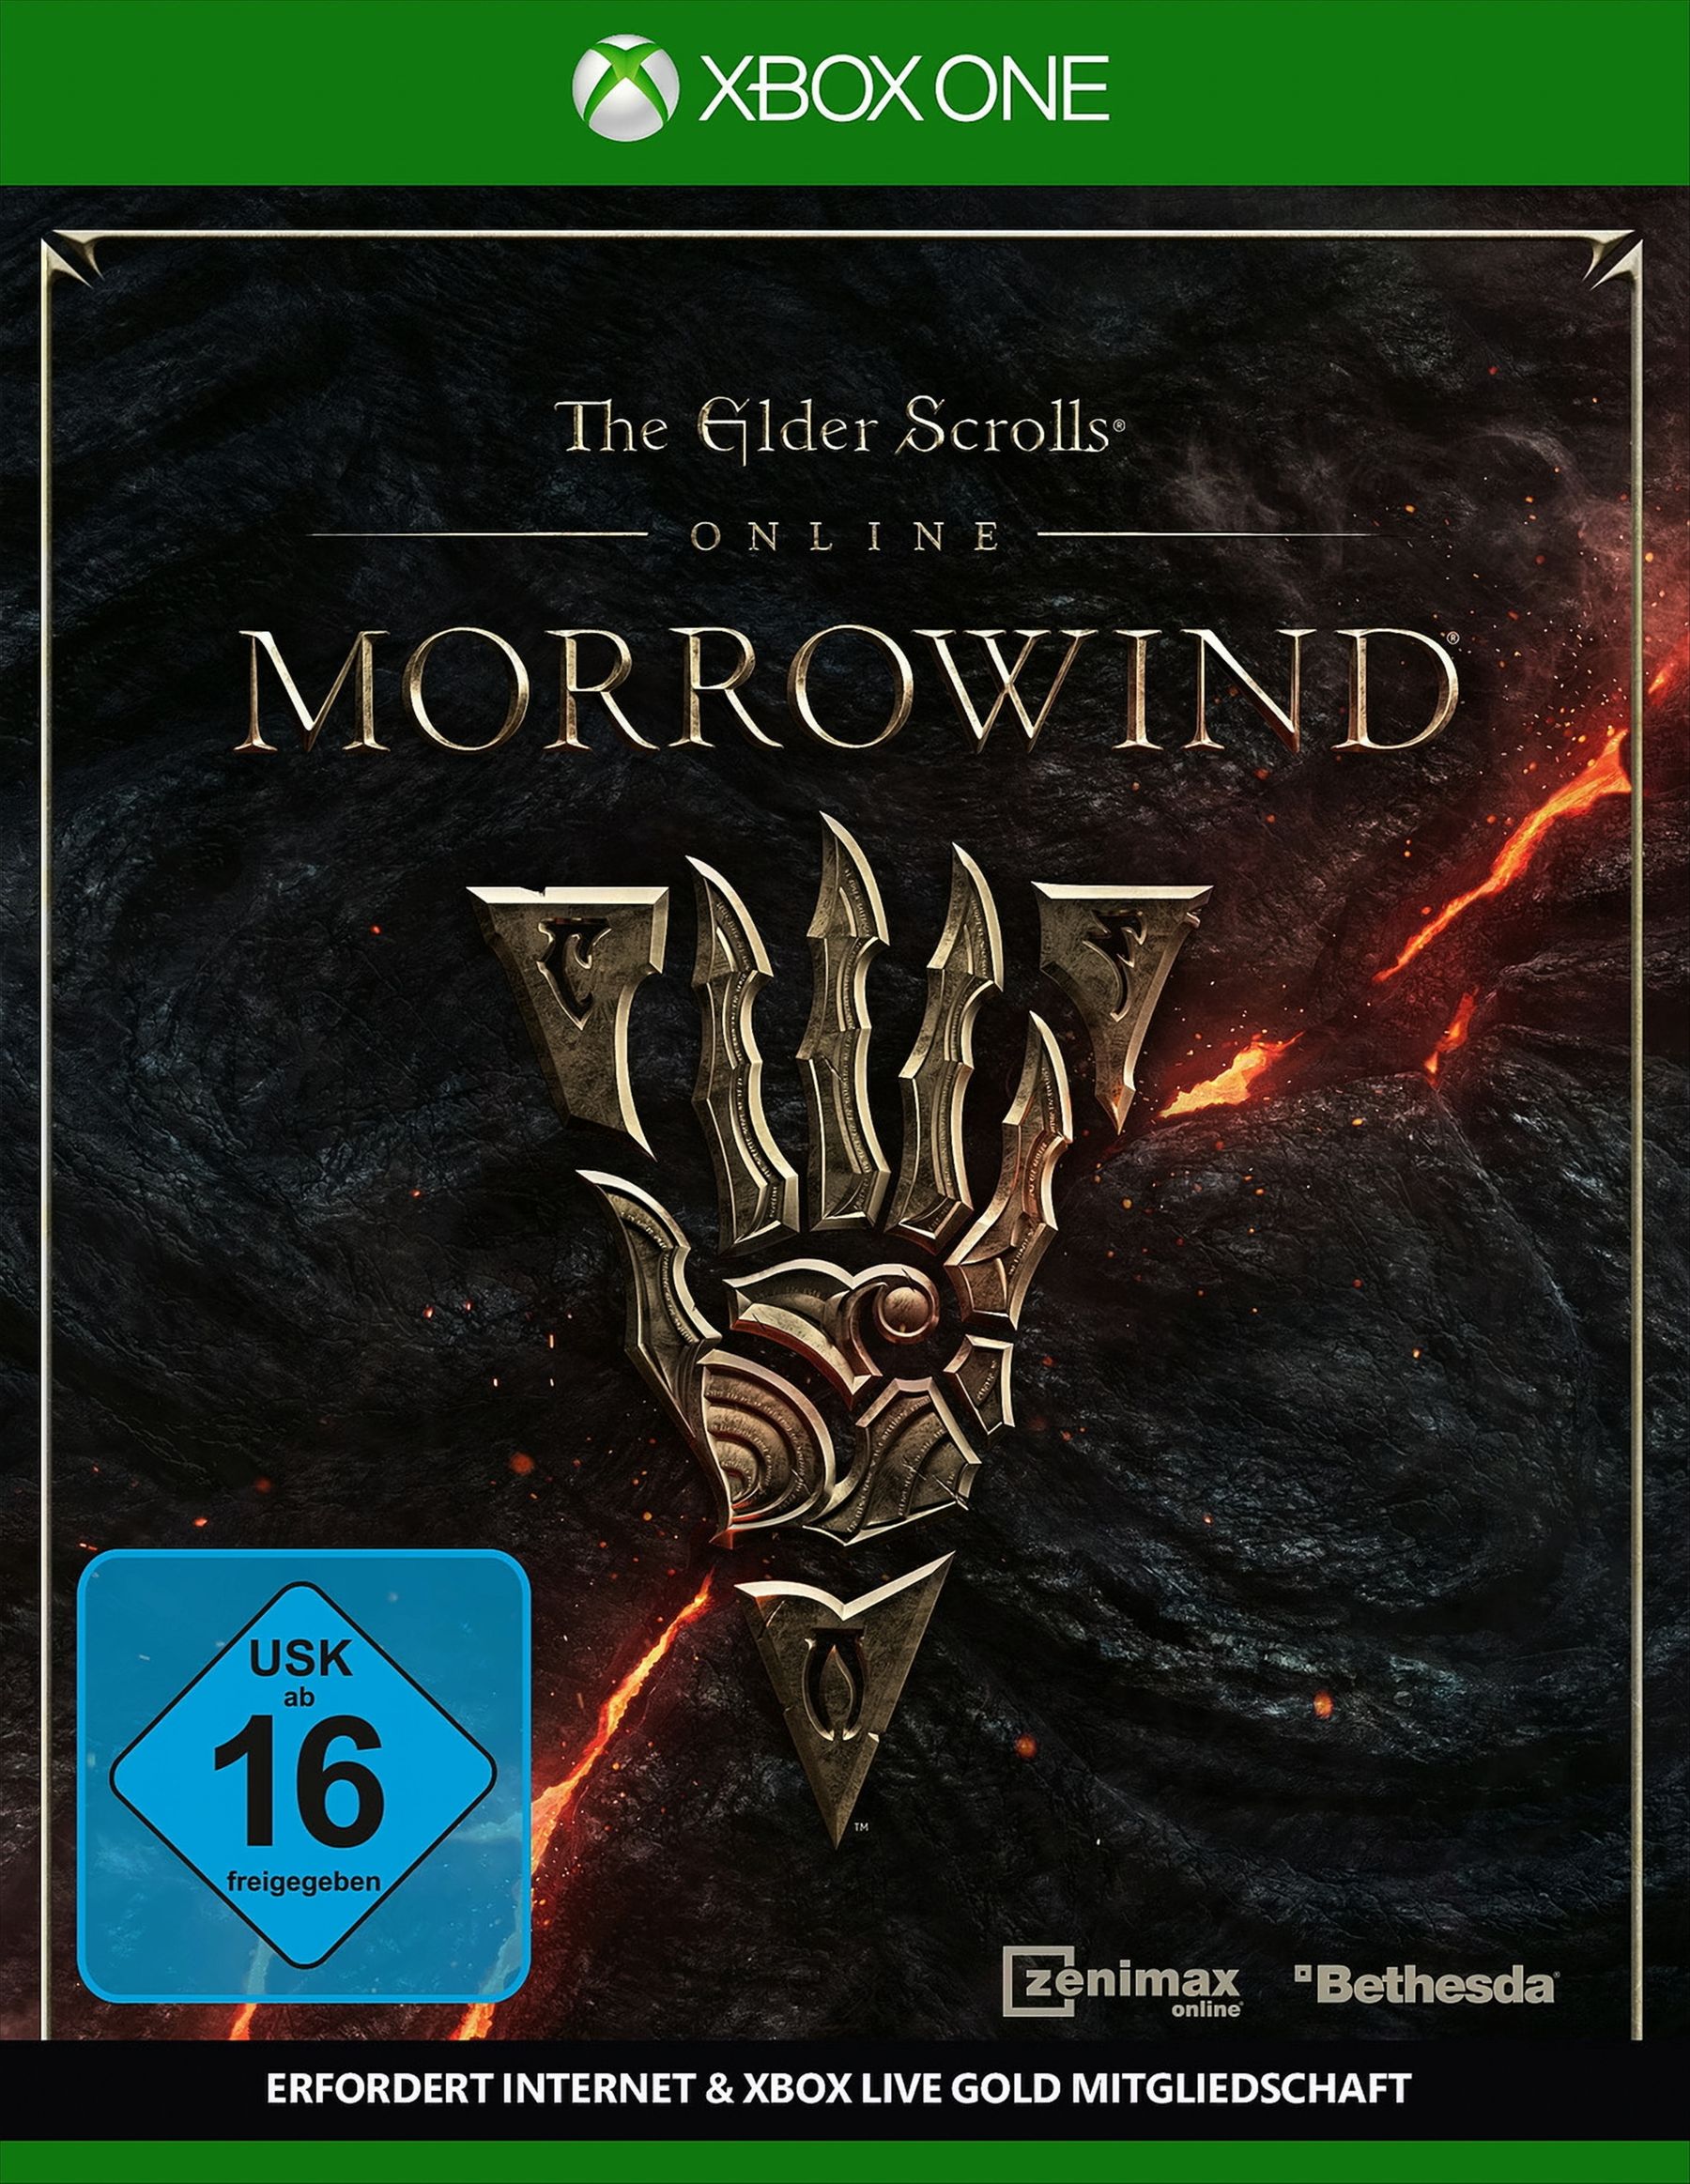 The Elder Scrolls Online: Morrowind von Bethesda Softworks (ZeniMax)